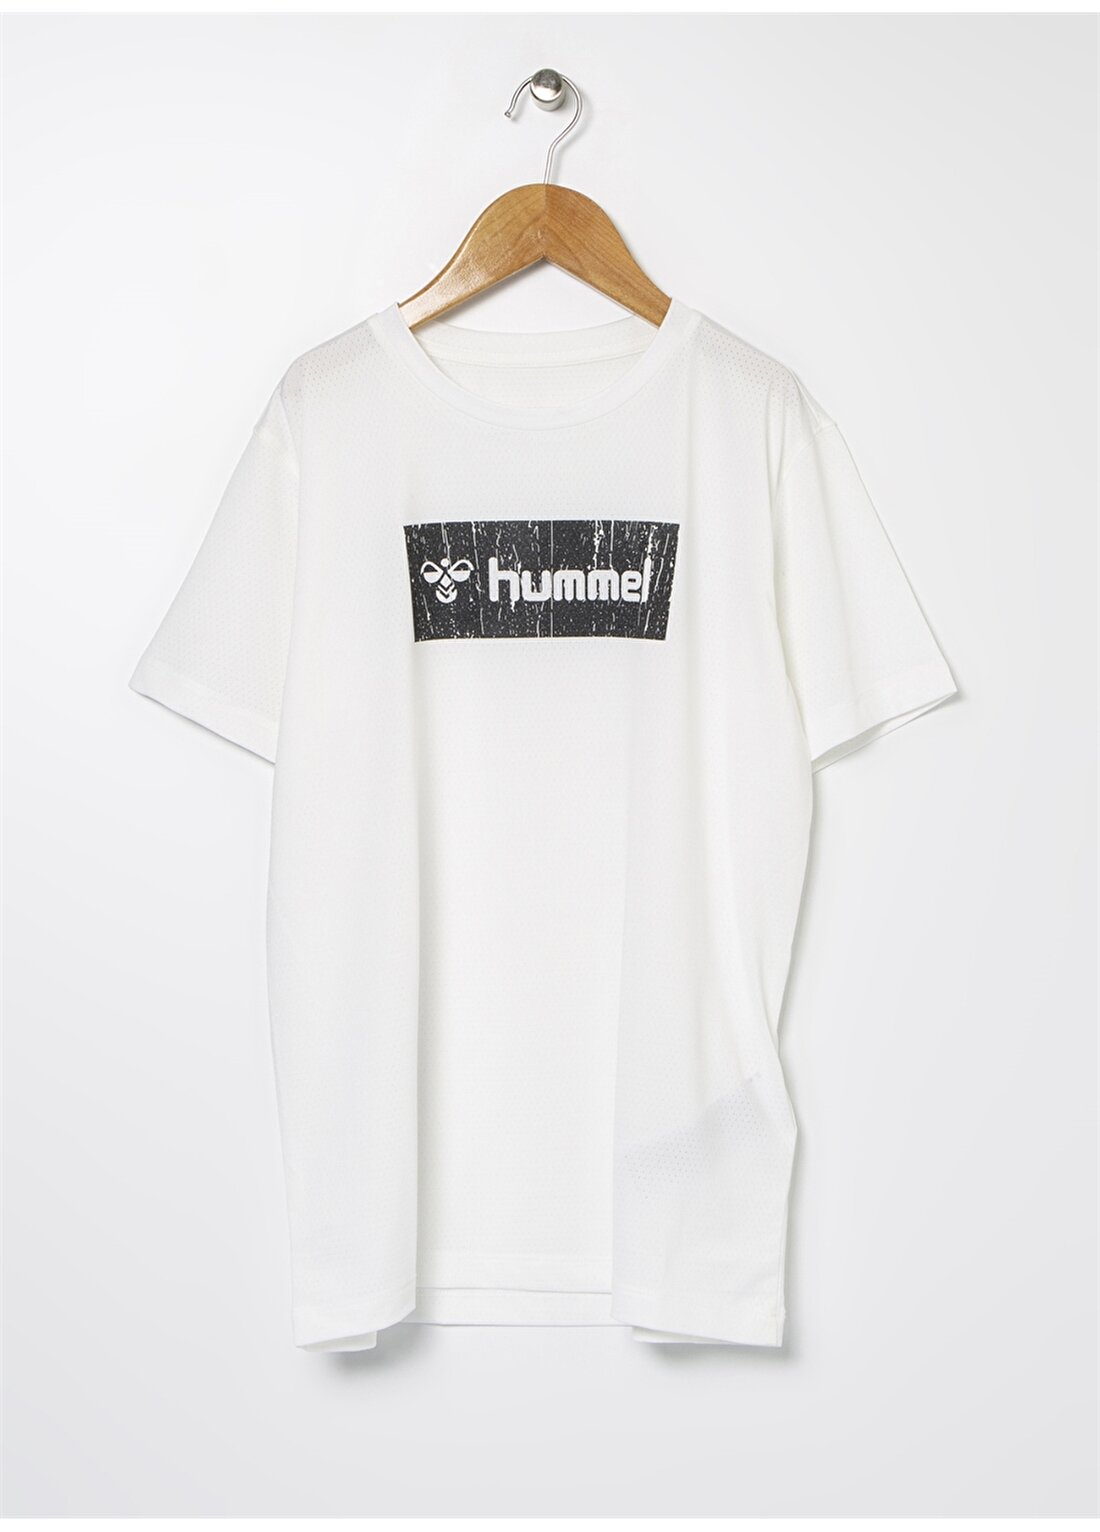 Hummel LUCAS Beyaz Erkek Çocuk T-Shirt 910925-9003